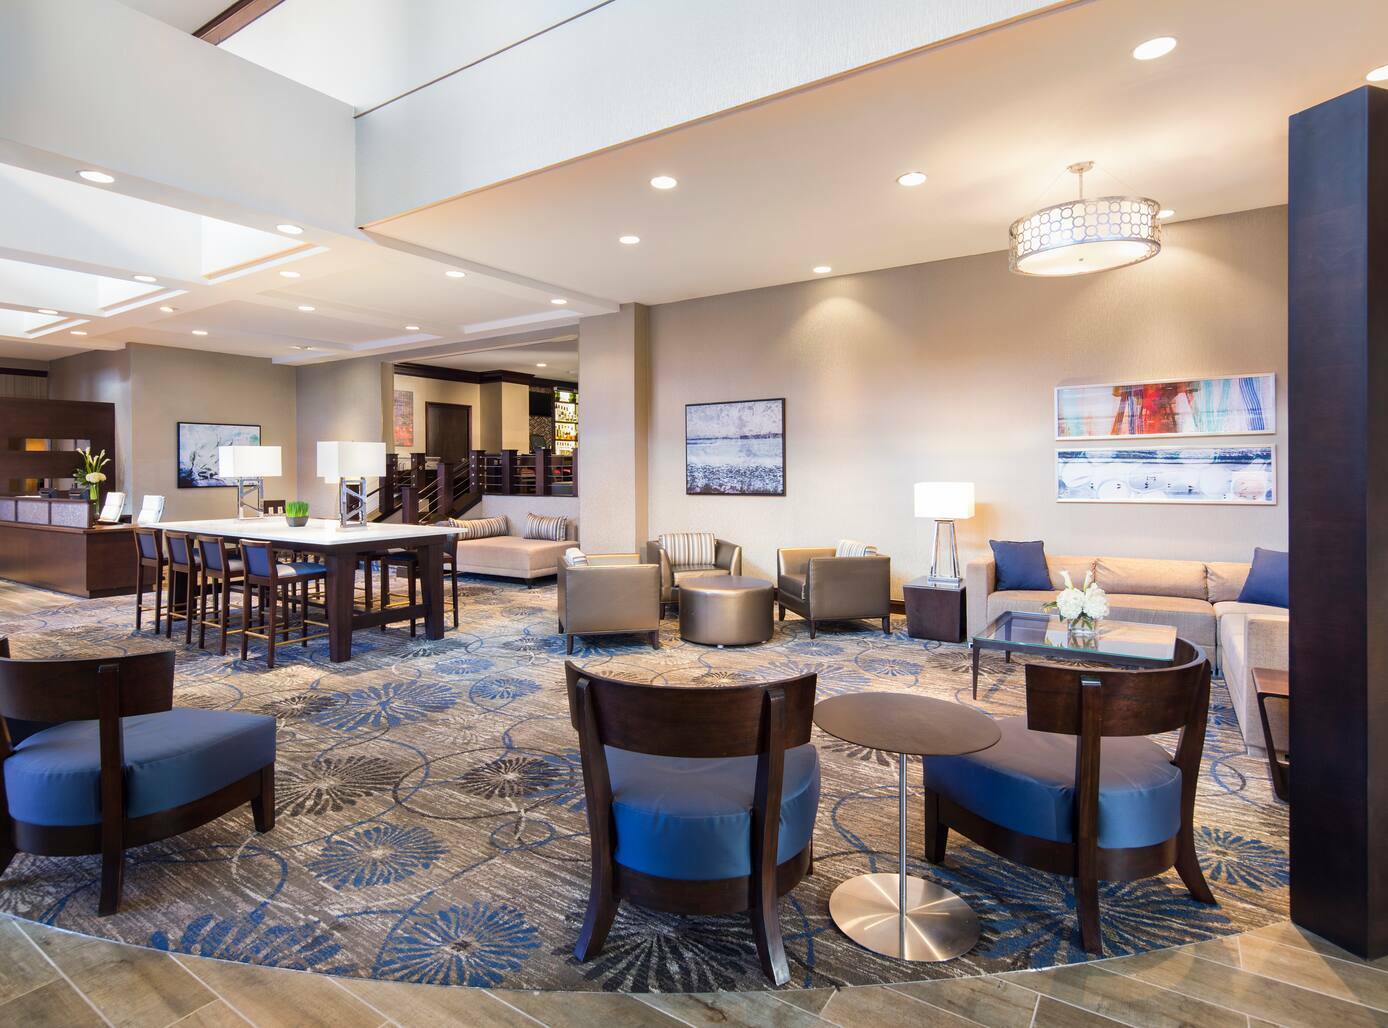 Photo of DoubleTree by Hilton Hotel Jacksonville Riverfront, Jacksonville, FL